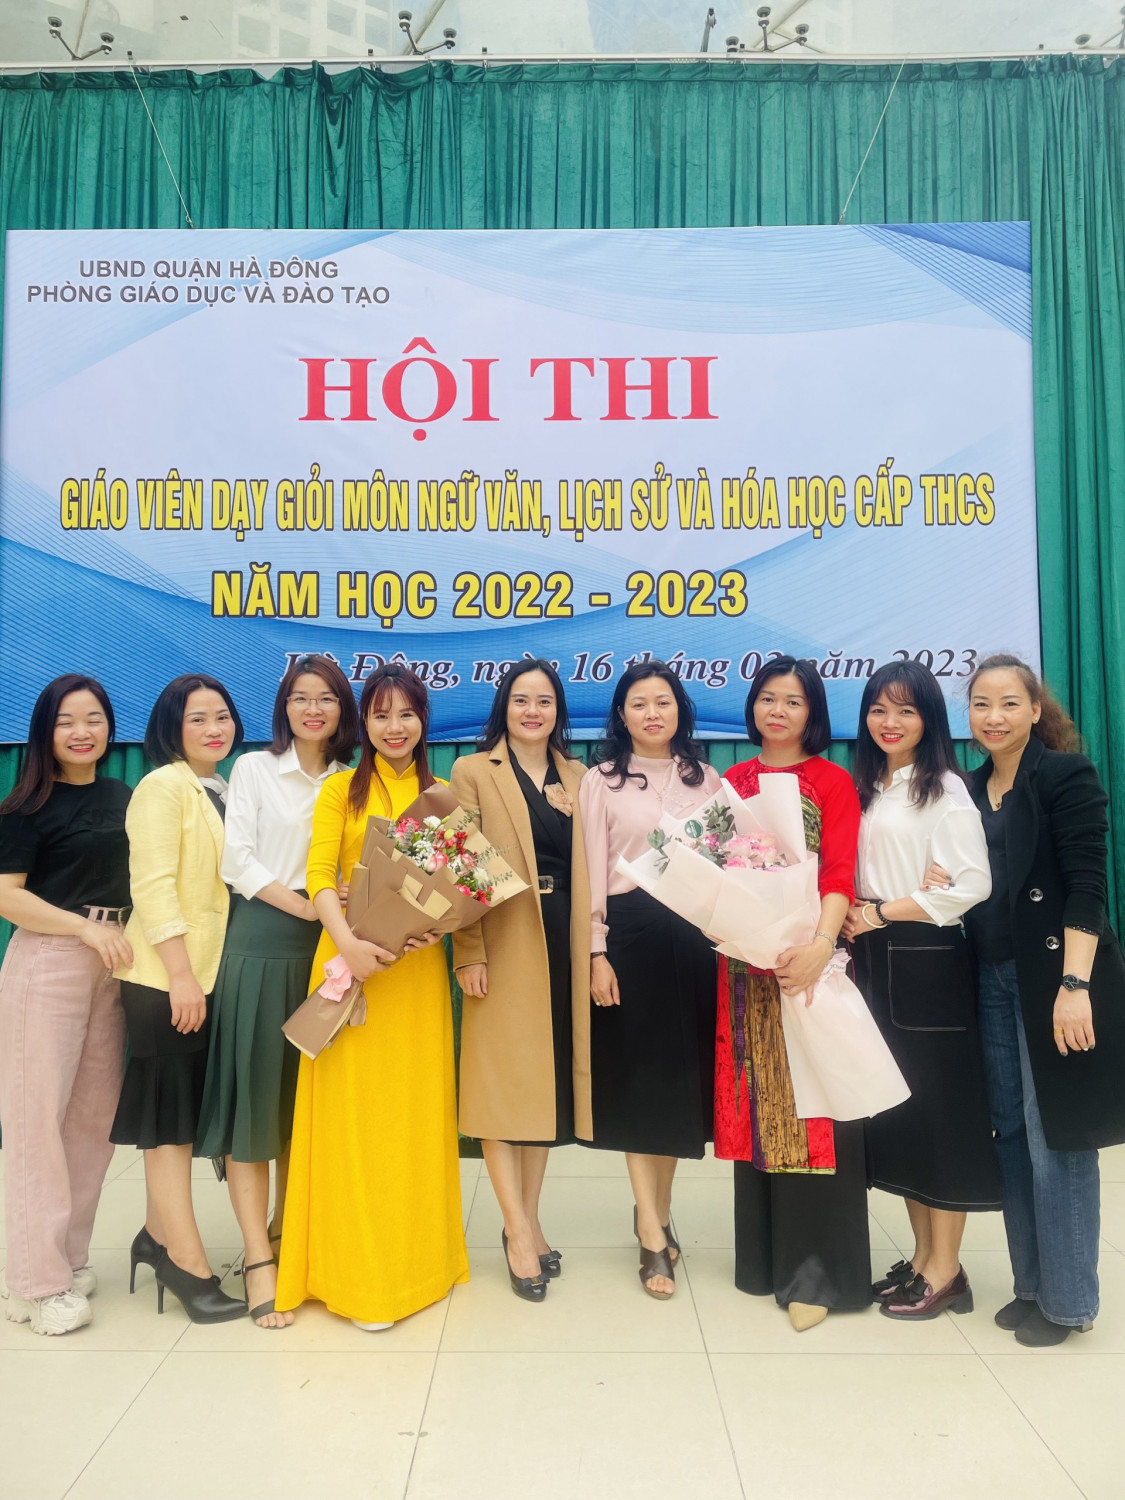 Trường THCS Văn Yên xin chúc mừng đ/c Quách Thanh Huyền và đ/c Trần Linh Chi đã hoàn thành xuất sắc nhiệm vụ trong Hội thi “ Giáo viên dạy giỏi cấp Quận năm học 2022-2023.